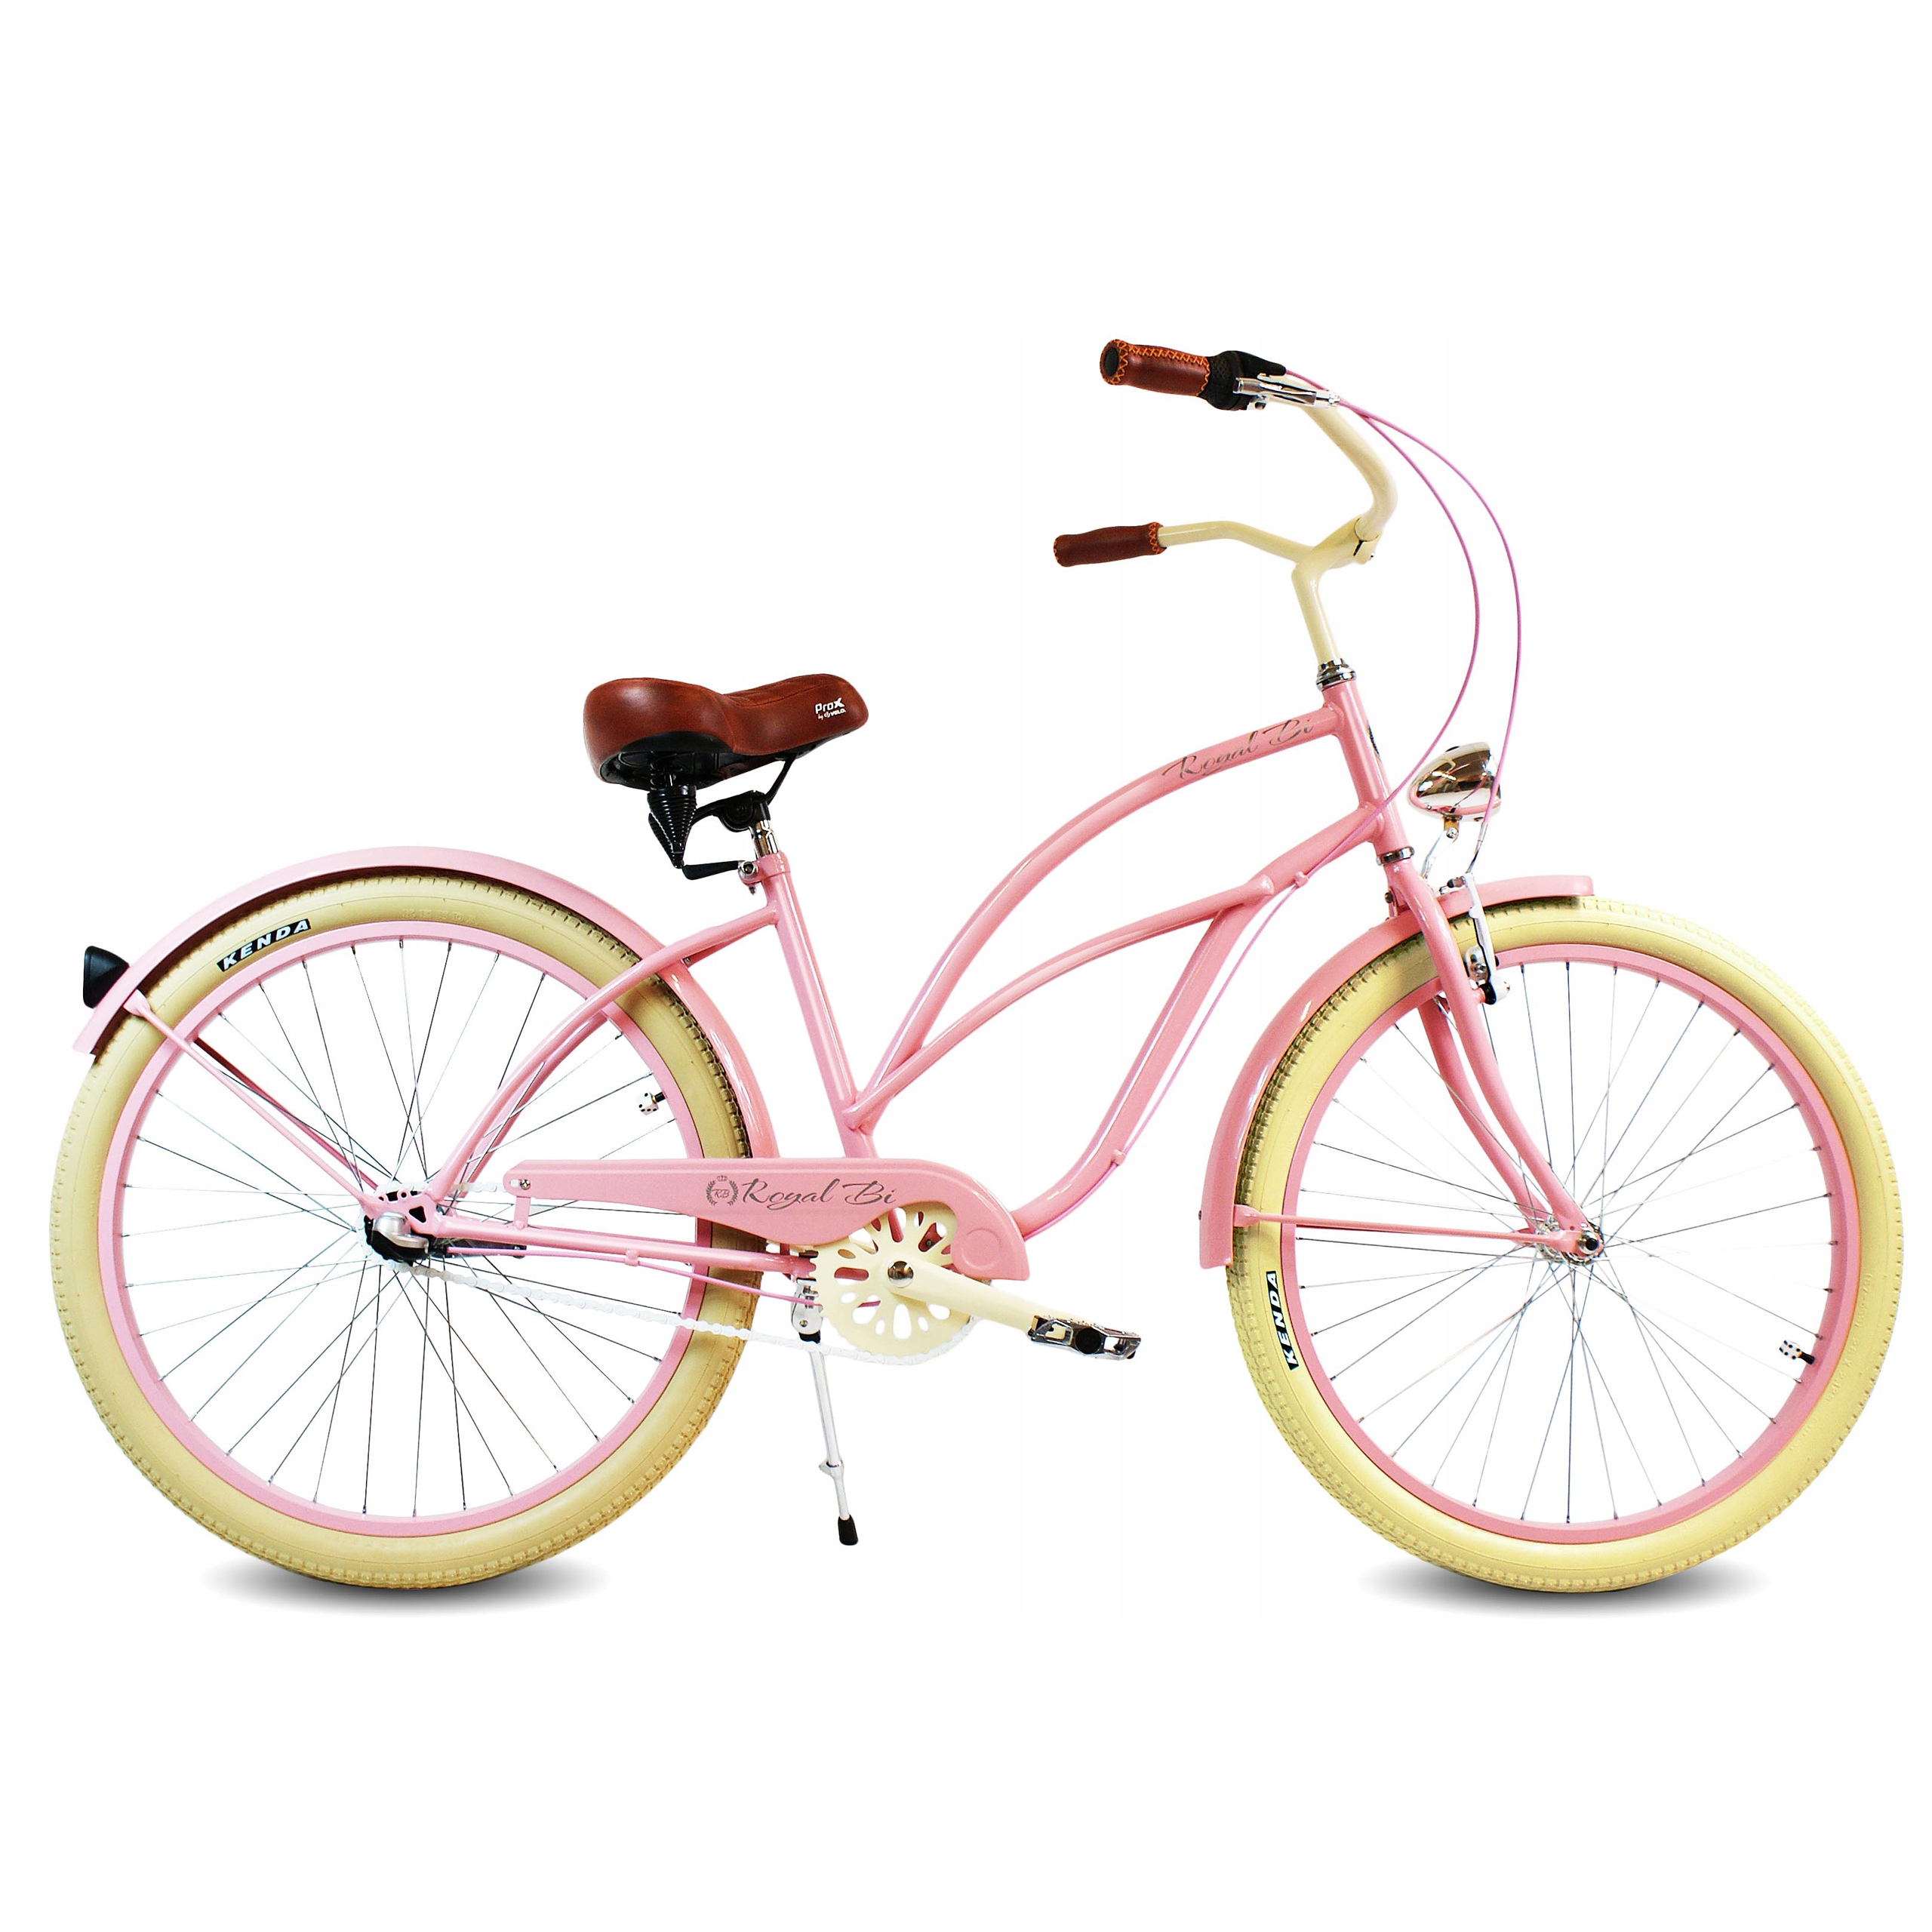 Велосипед женский stels розовый круизер. Стелс велосипед круизер розовый. Велосипед стелс женский круизер. Прогулочный велосипед стелс.